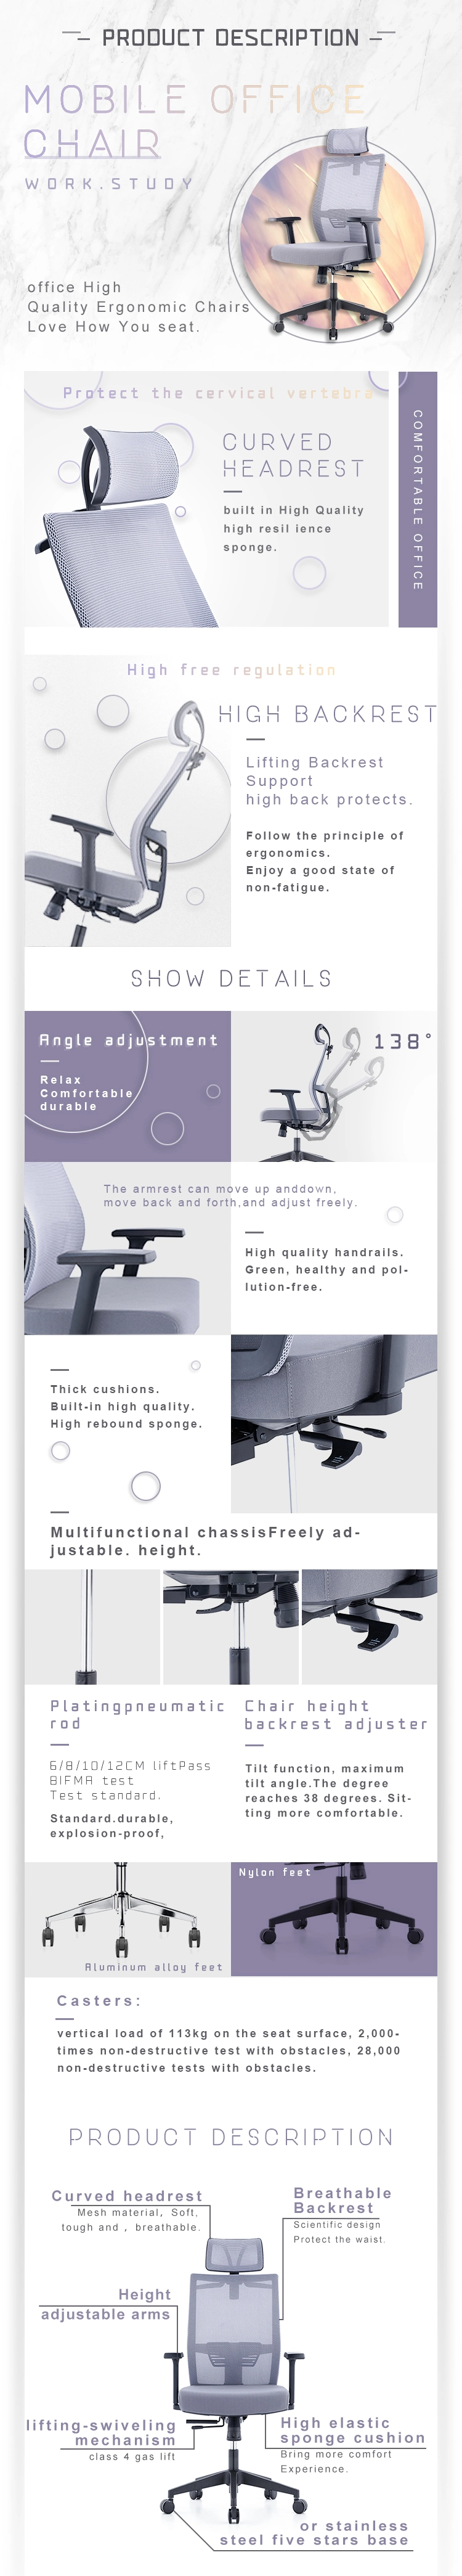 New Designed Ergonomic Multi Function Mesh Office Swivel Chair